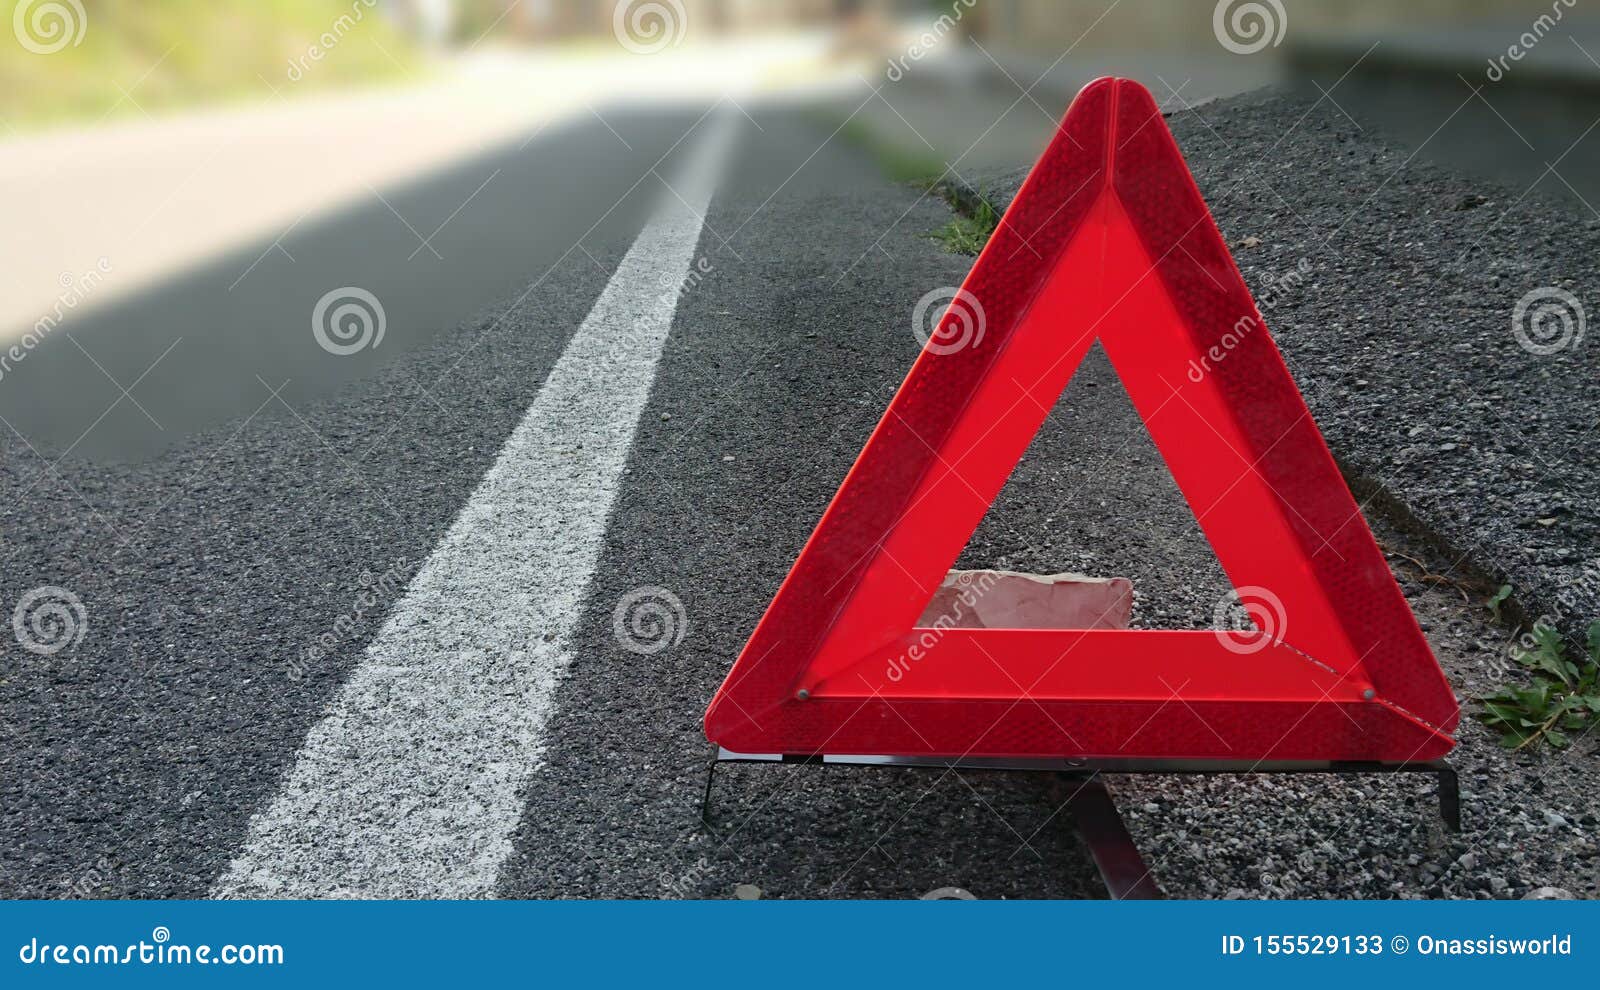 danger warning road sign